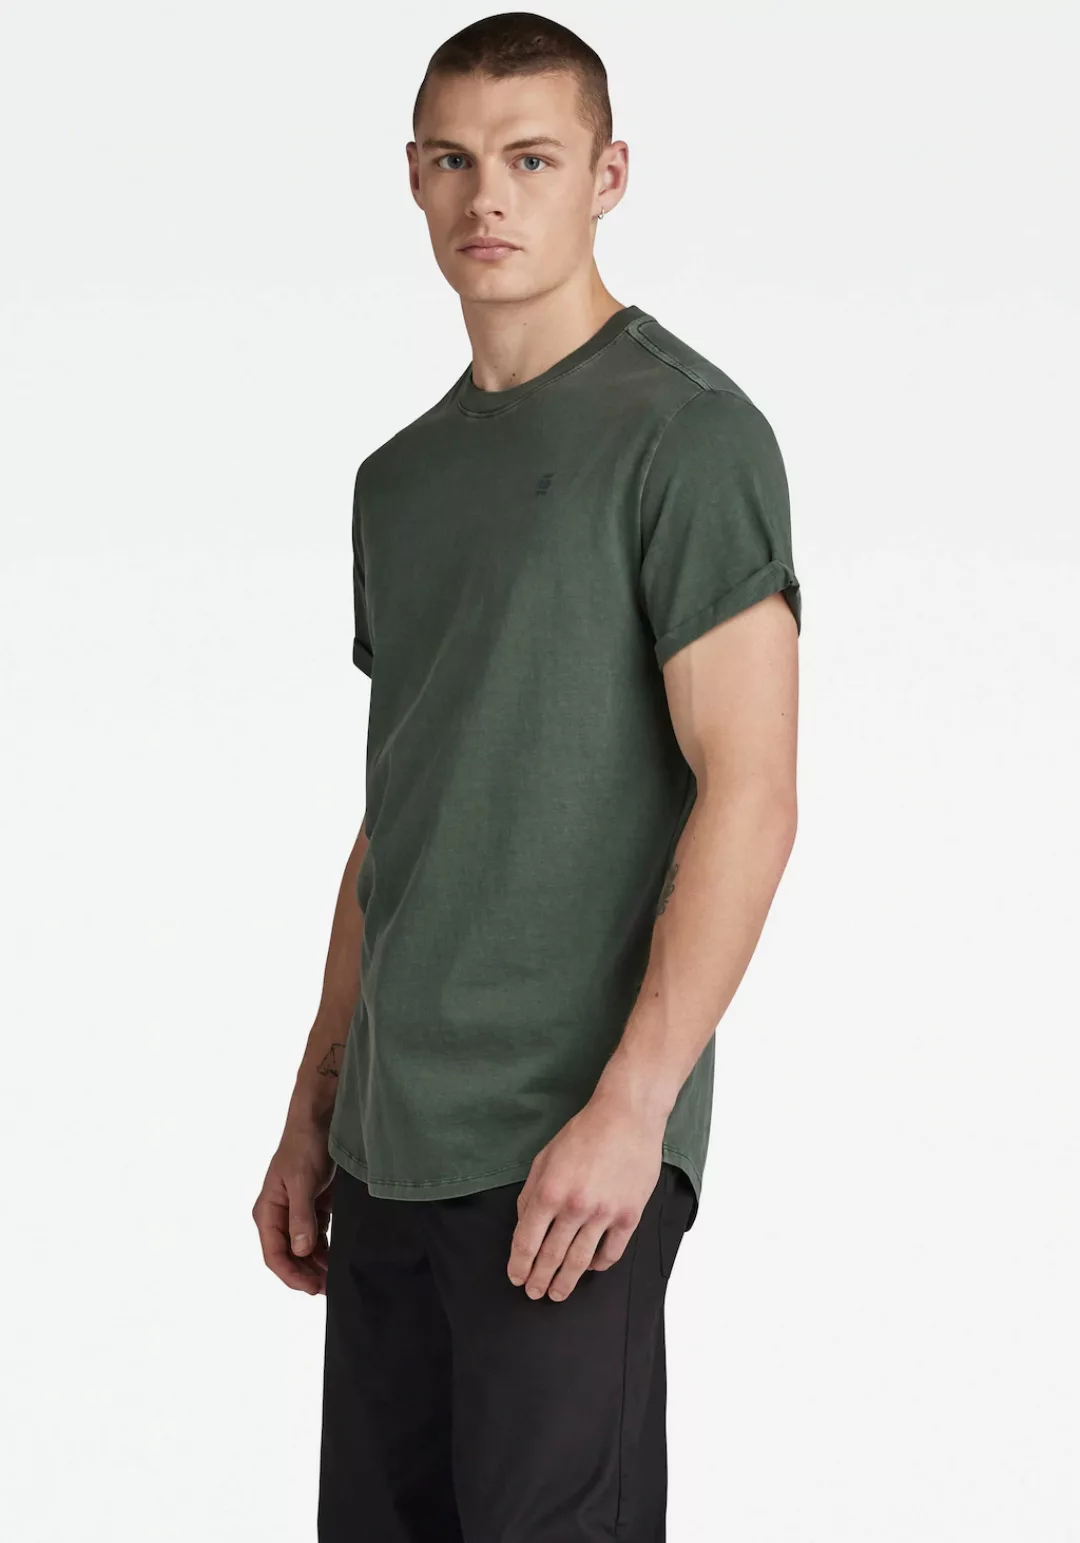 G-Star RAW T-Shirt Lash r t günstig online kaufen